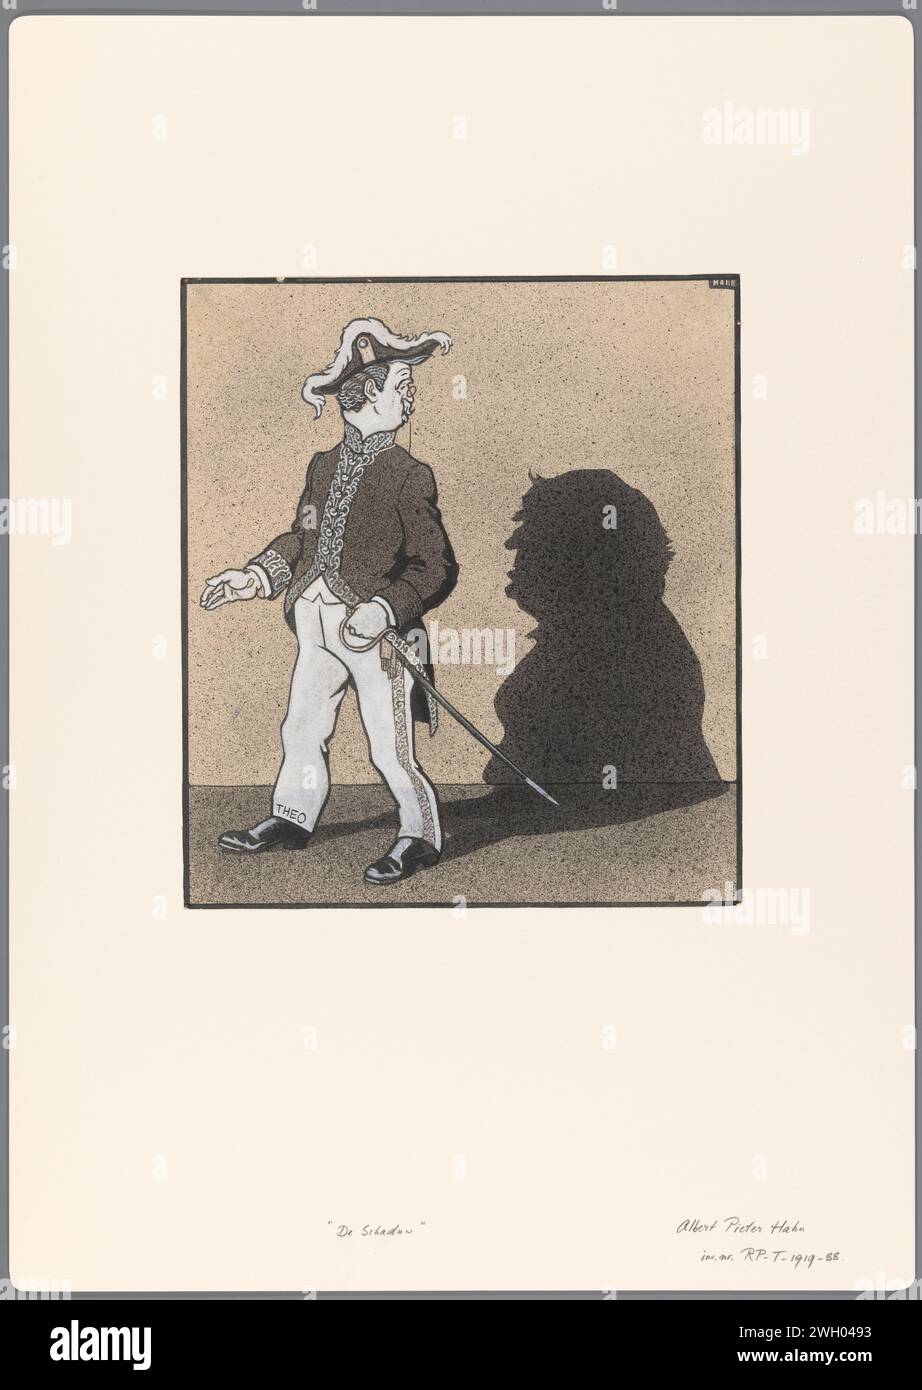 Entwurf für einen politischen Zeichentrickfilm: De Shaduw, Albert Hahn (I), 1887–1919 Zeichnung Entwurf für einen Druck. Papier. Deckfarbe. Tinte. Kreidestift / Pinsel politische Karikaturen und Satiren. Karikaturen (menschliche Typen) Stockfoto